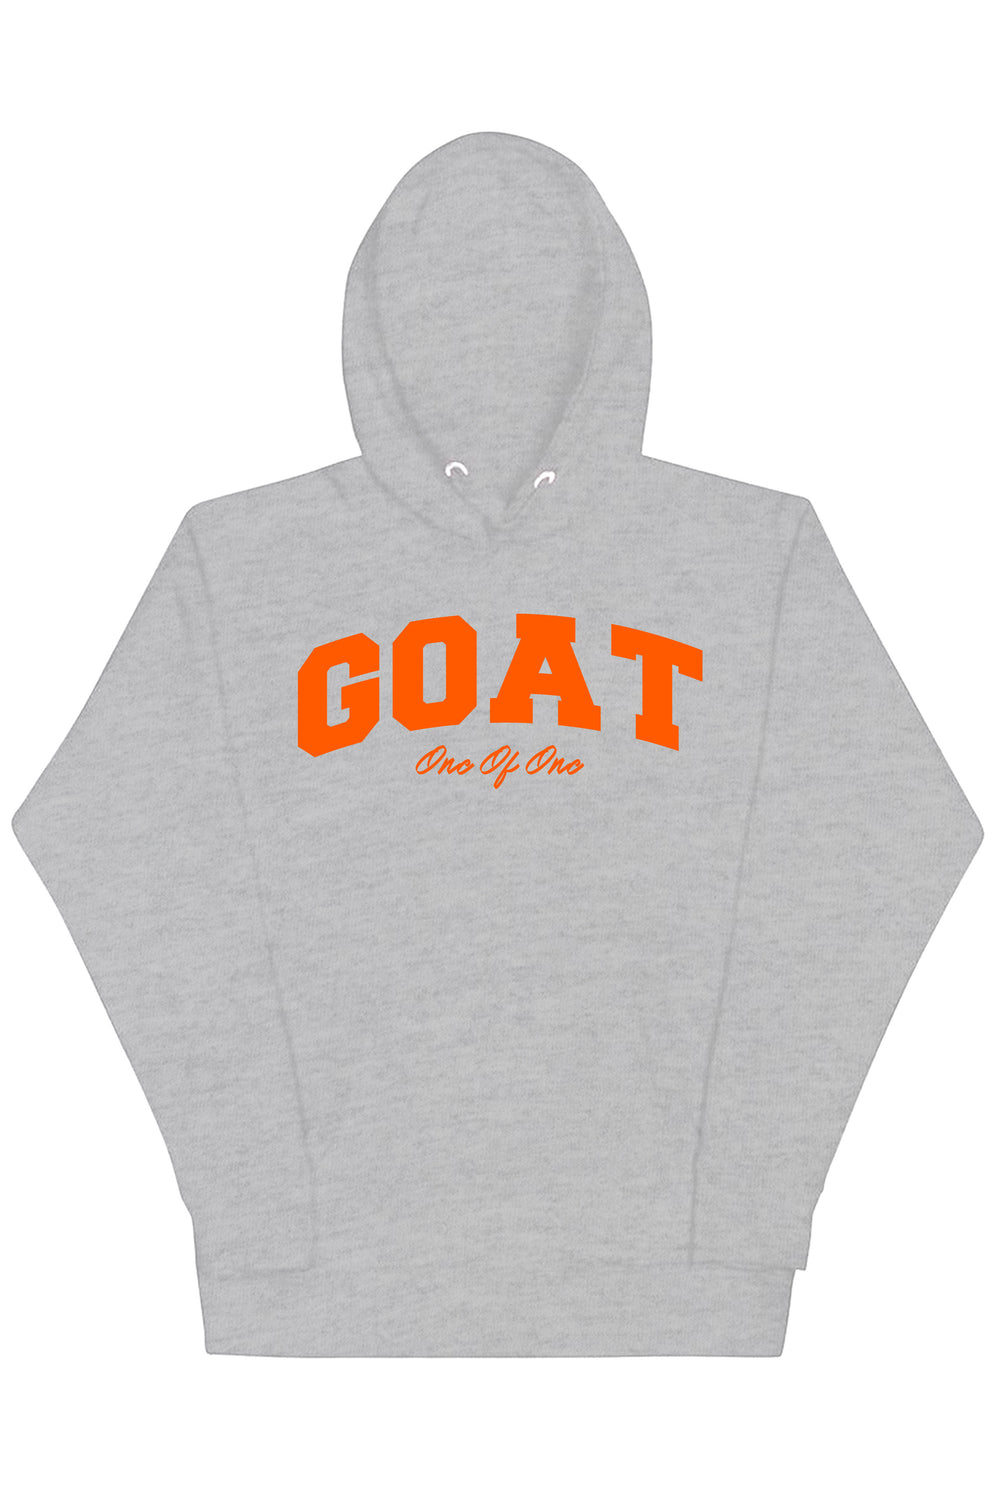 Goat Hoodie (Orange Logo) - Zamage